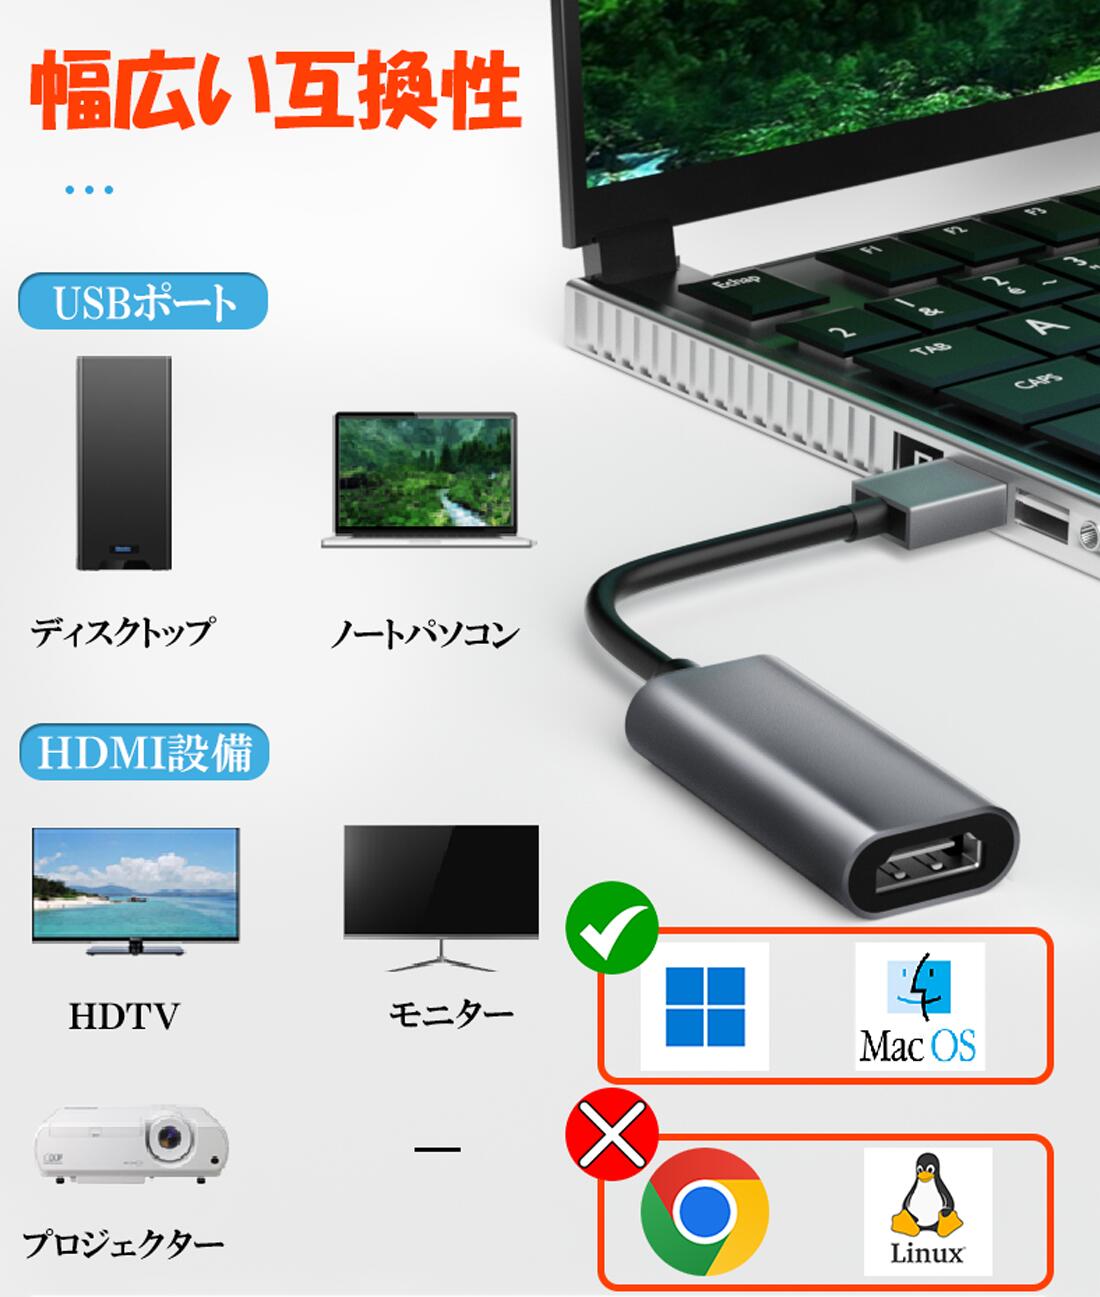 USB HDMIアダプタ [ 高解像度 1080p ] USB 2.0 to HDMI 変換 アダプタ 「ドライバー内蔵」 usb hdmi 変換 ケーブル 音声出力 ディスプレイアダプタ Windows XP / 7 / 8 / 10 / 11 / Mac対応 安定出力 コンパクト 3